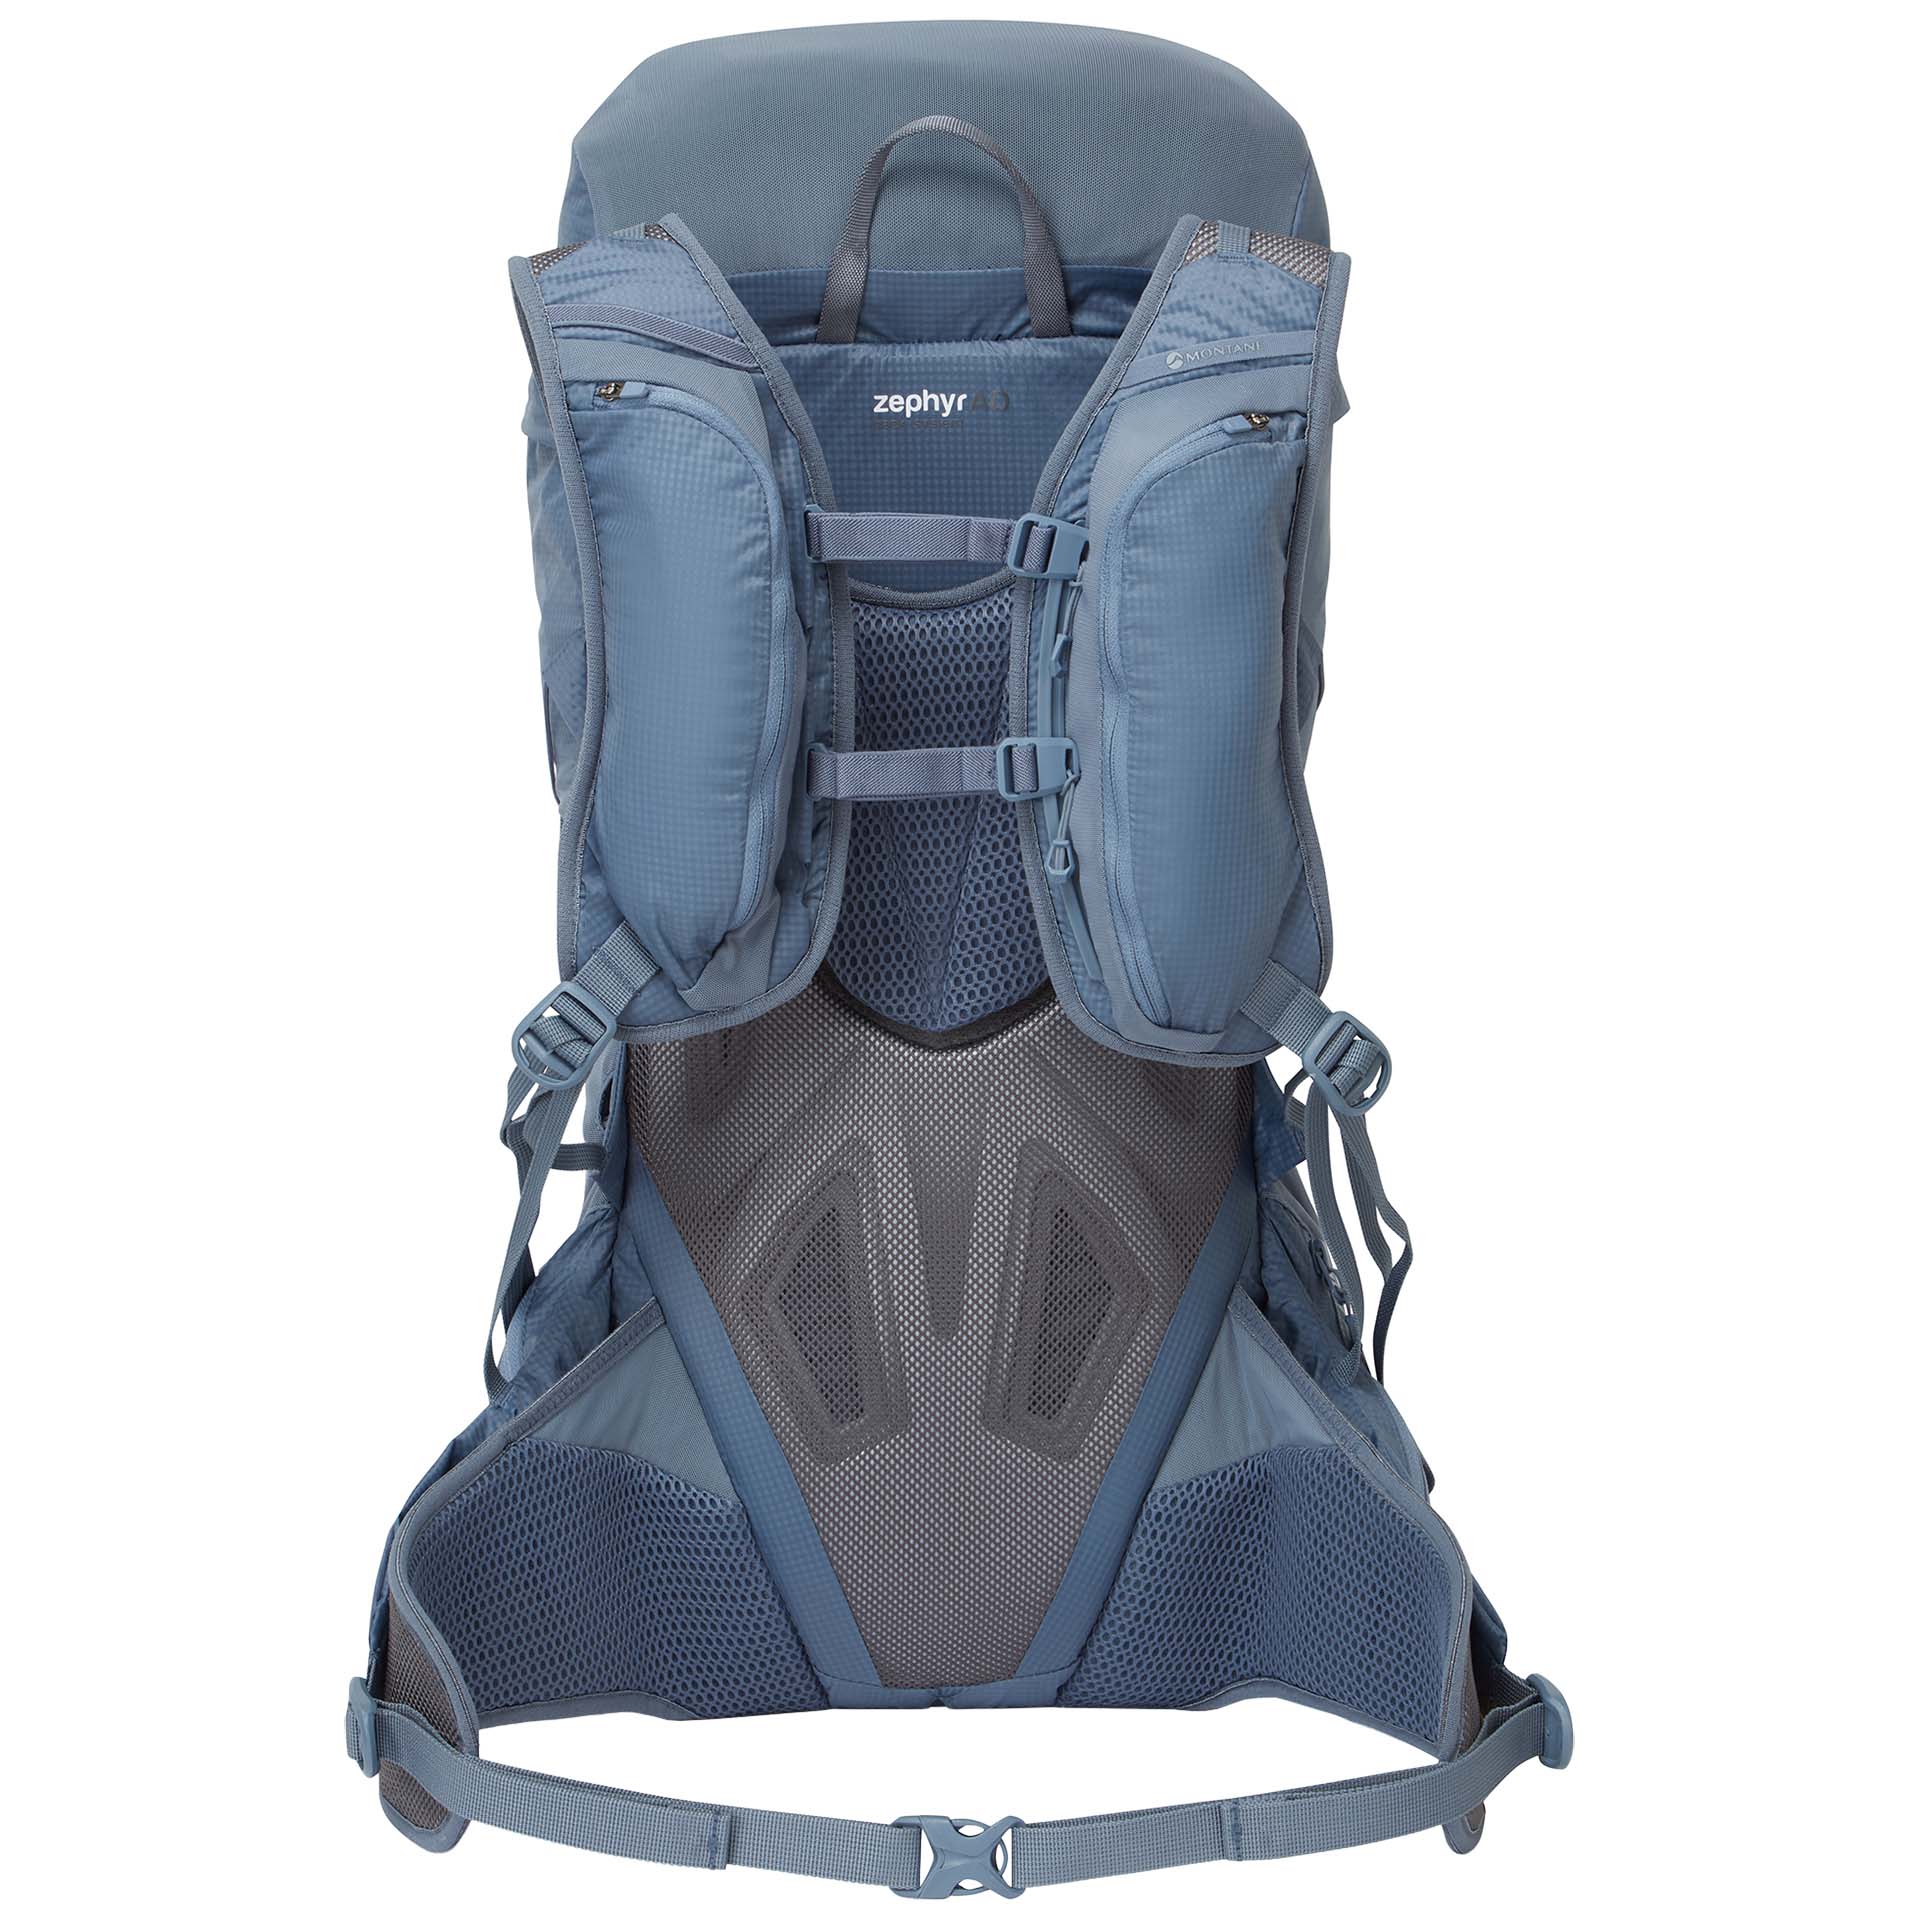 Montane Trailblazer 32 Trekking Backpack